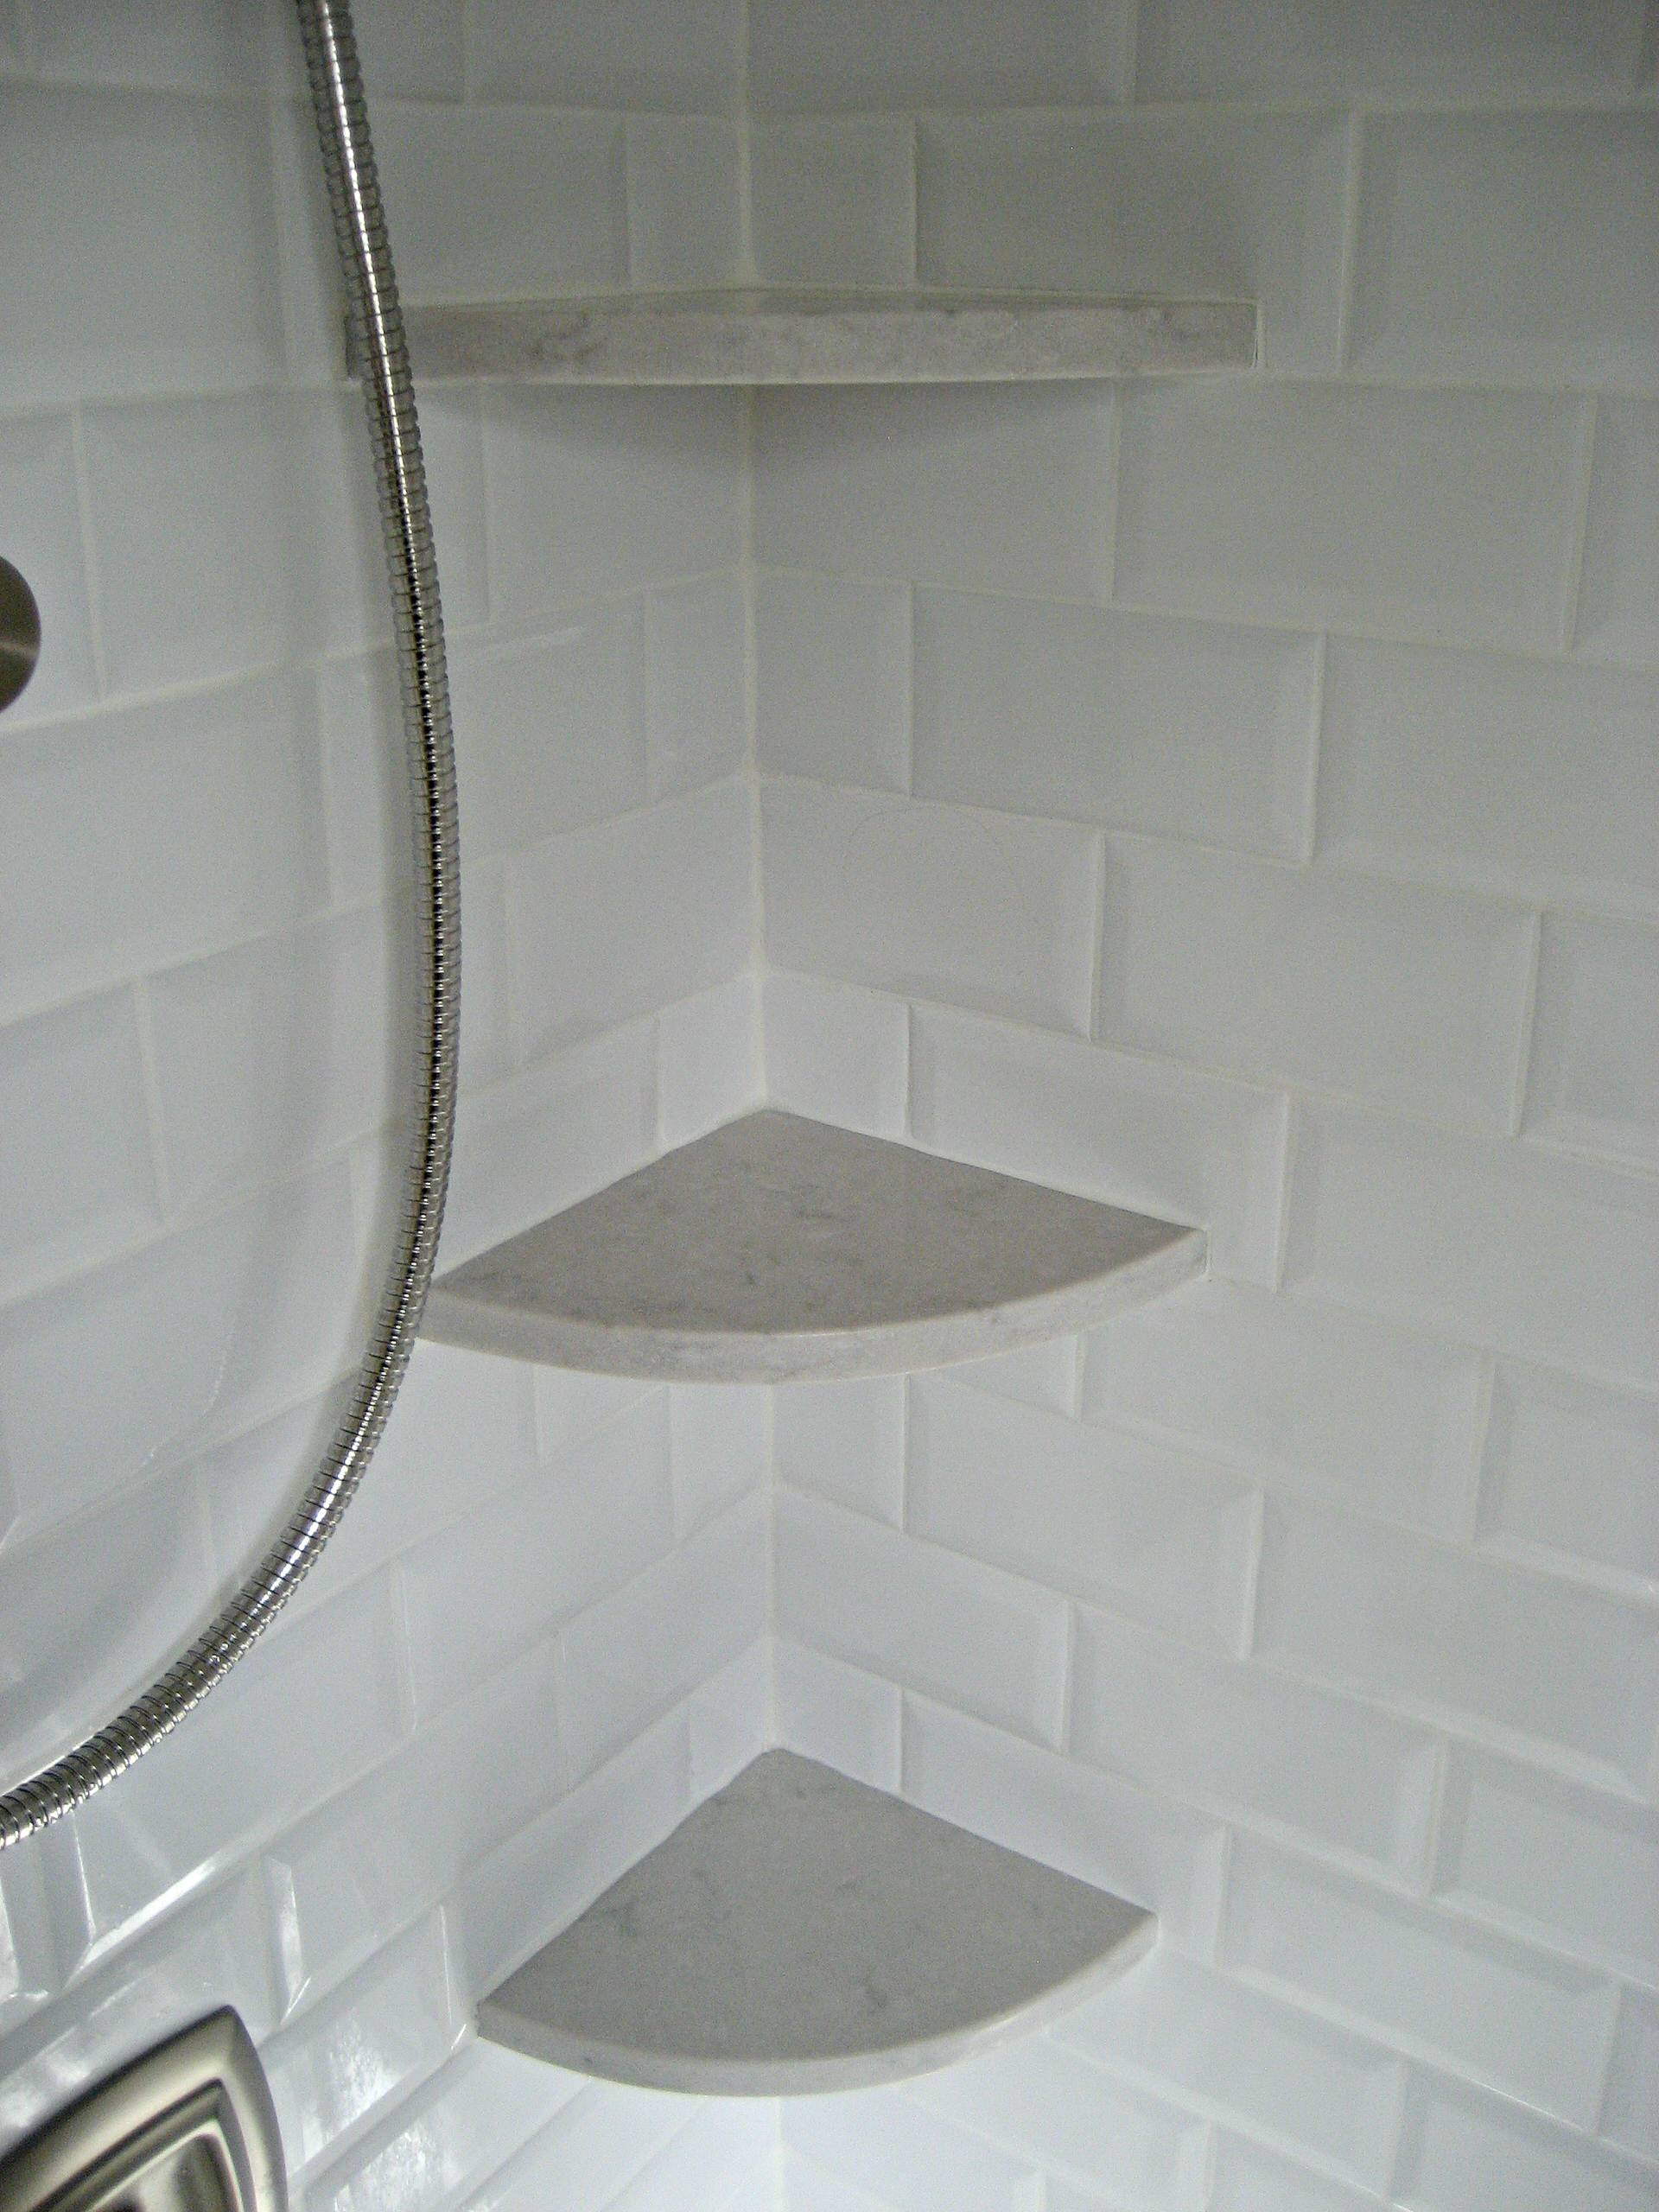 Shower Corner Shelves Houzz, Tile Corner Shelf Shower